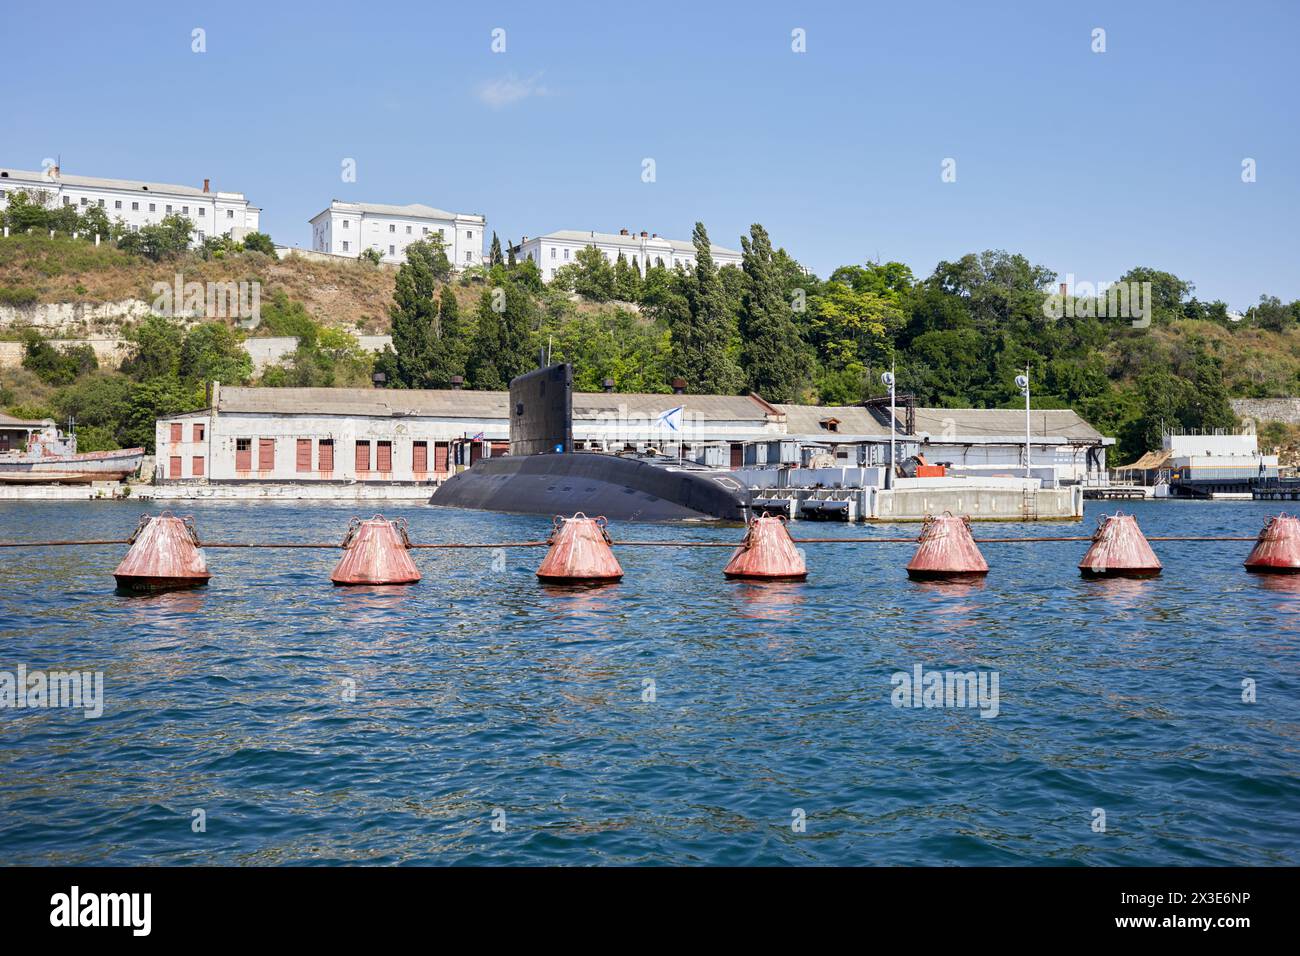 SÉBASTOPOL, CRIMÉE - 10 juin 2018 : sous-marin à l'embarcadère de la baie de Sébastopol. Banque D'Images